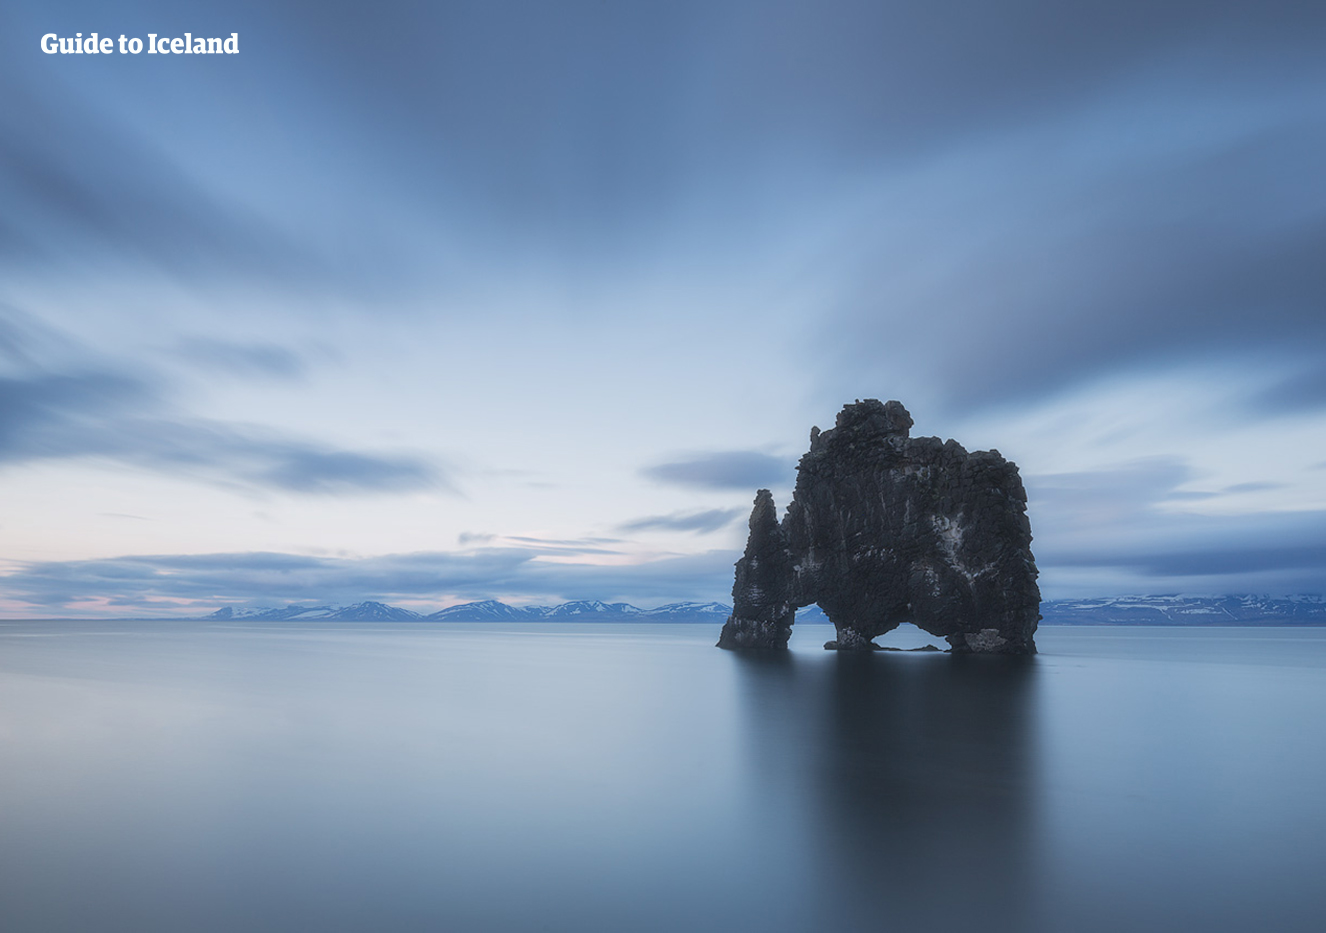 Den storslagna stenmonoliten Hvítserkur på norra Island.